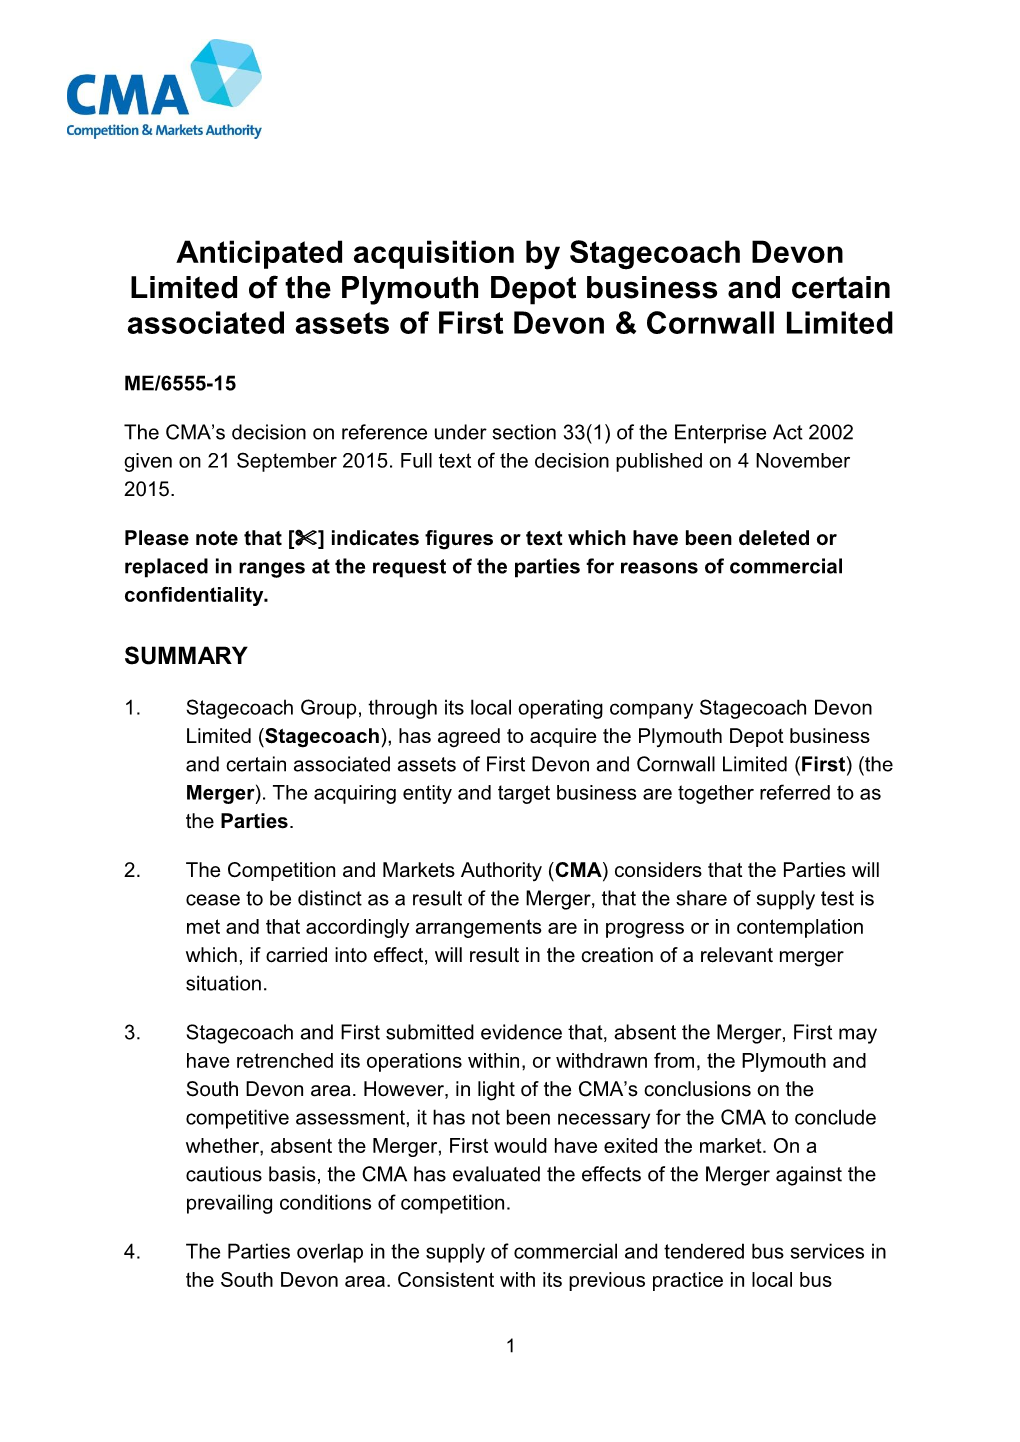 Stagecoach Devon/First Devon & Cornwall Full Text Decision